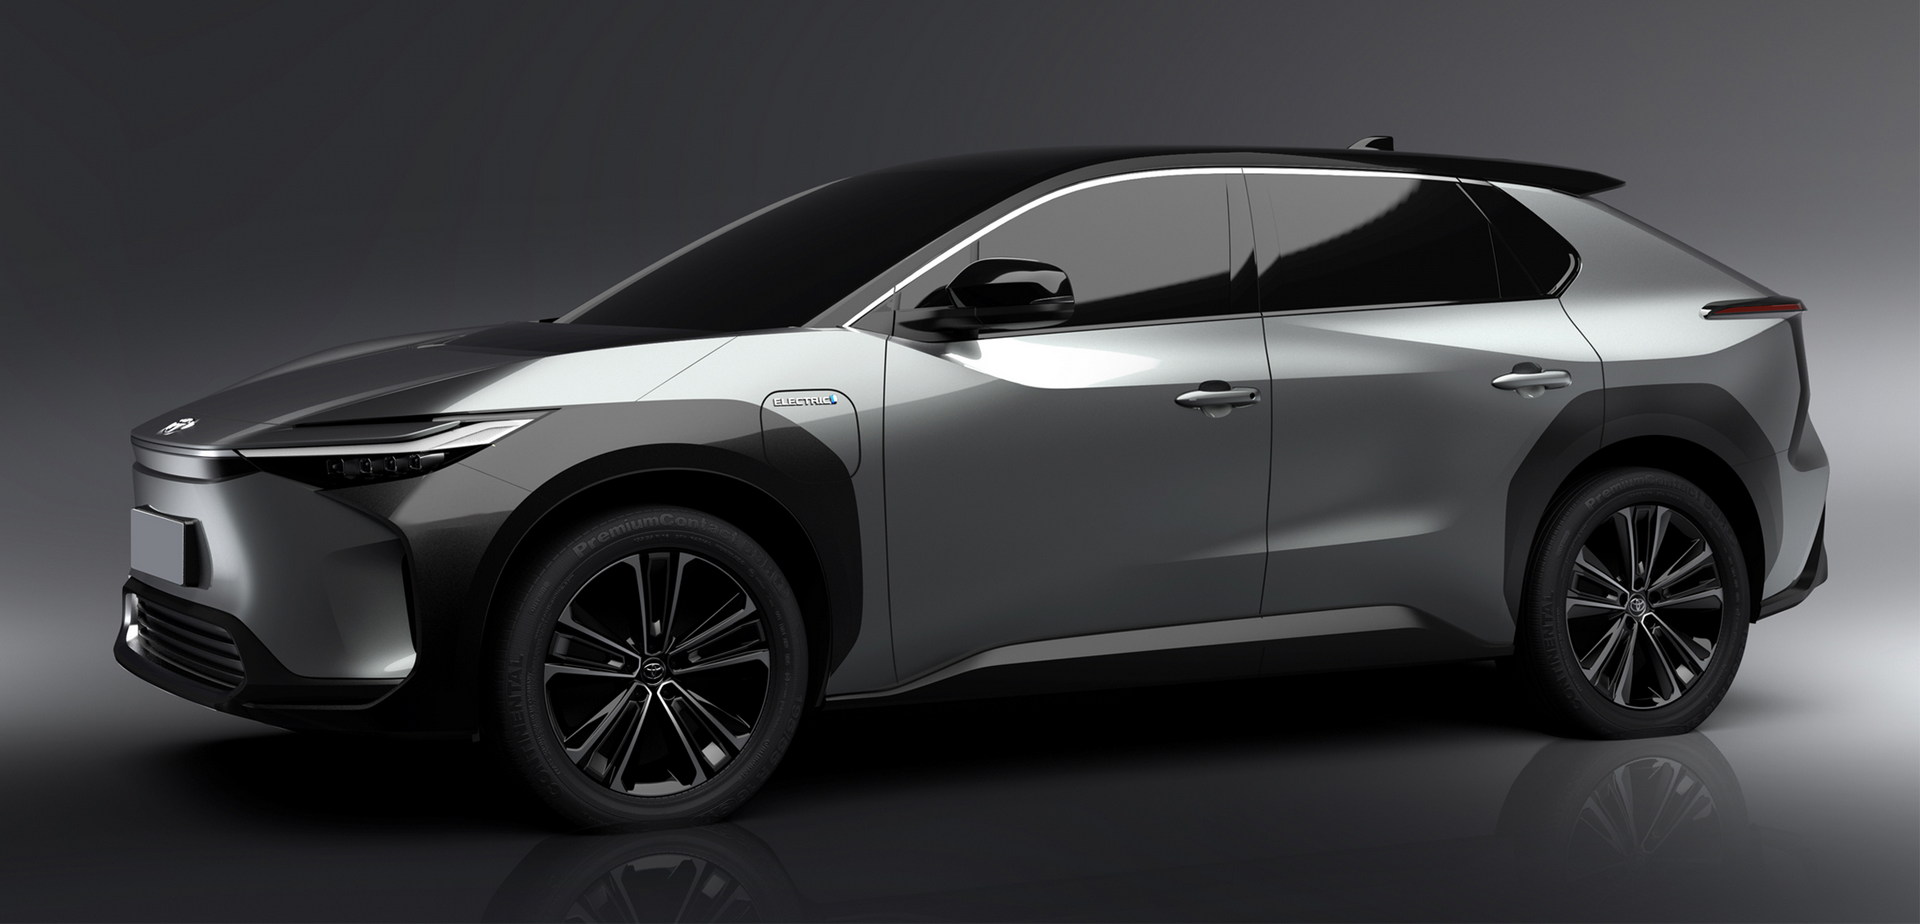 Toyota chuẩn bị tung SUV mới Chung khung gầm với Vios có tùy chọn động cơ  hybrid